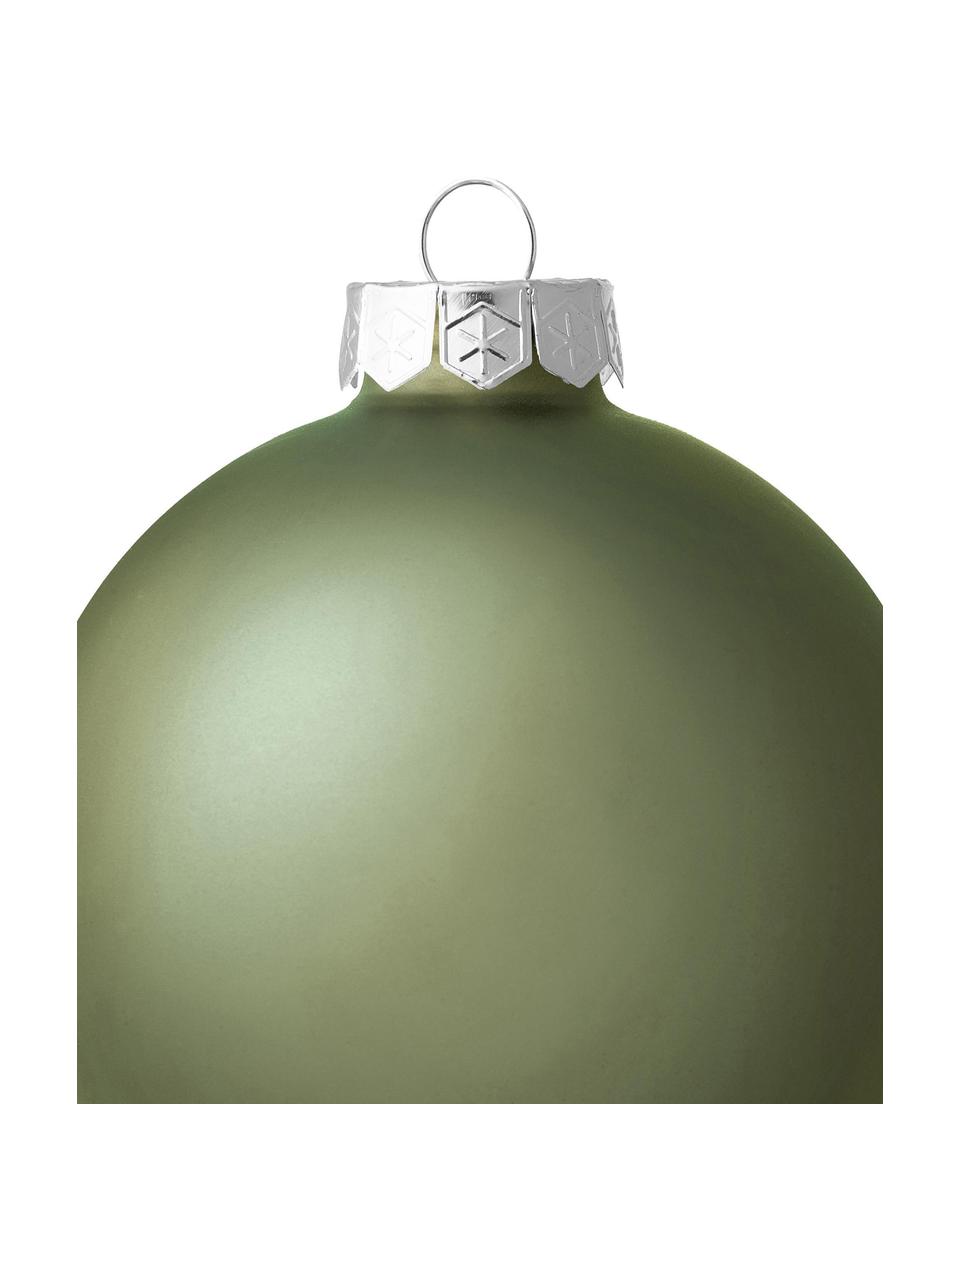 Komplet bombek Evergreen, Szałwiowy zielony, Ø 8 cm, 6 szt.